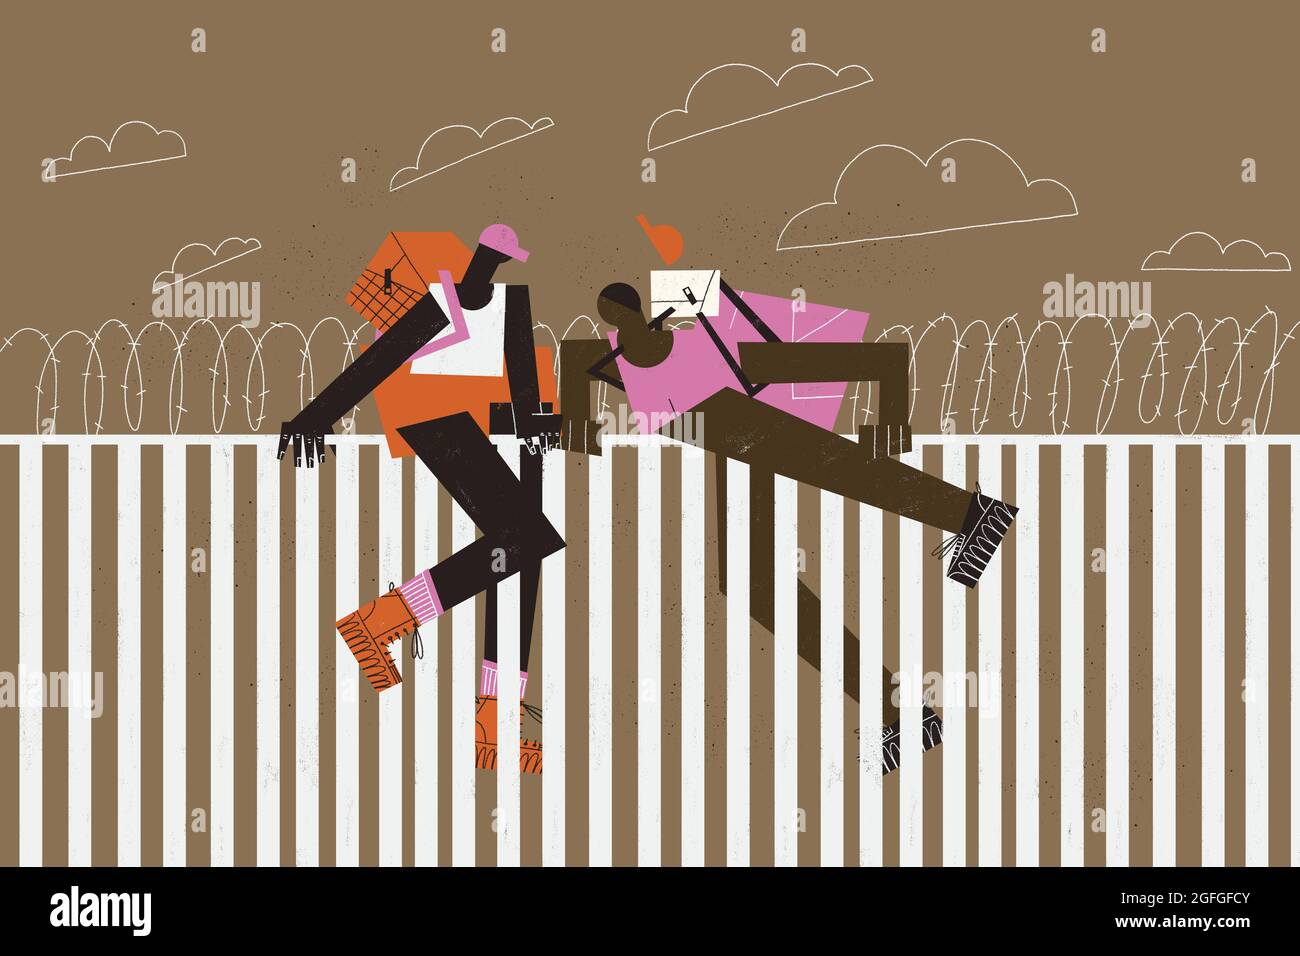 Migranten von Mutter- und Sohn-Flüchtlingen versuchen, über die Wand und Stacheldraht zu springen. Illustration zu migrantischen Dramen. Stockfoto